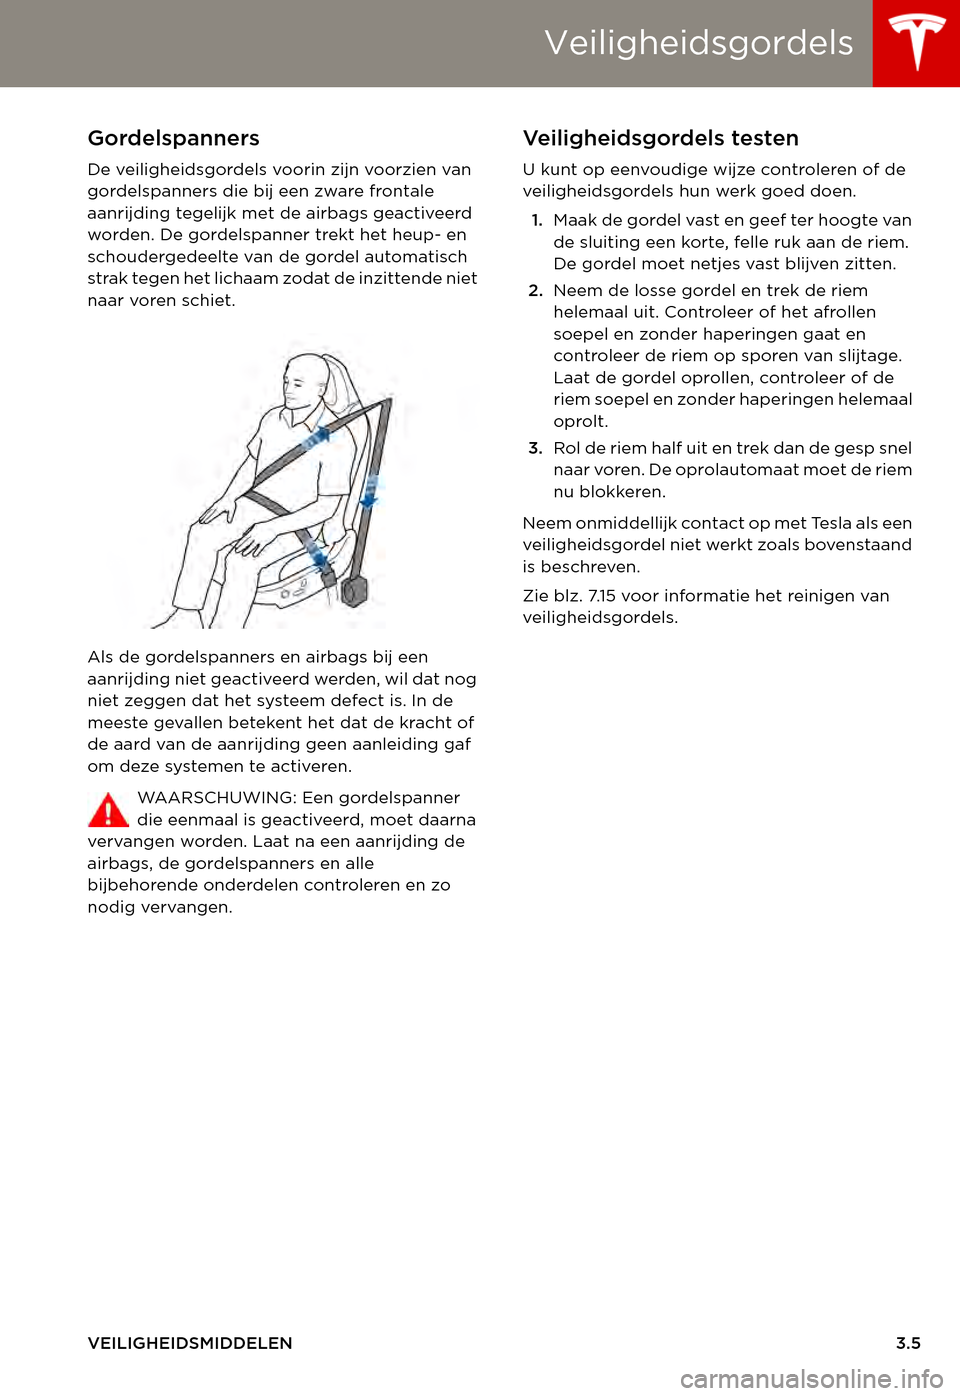 TESLA MODEL S 2015  Handleiding (in Dutch) Veiligheidsgordels
VEILIGHEIDSMIDDELEN3.5
Gordelspanners
De veiligheidsgordels voorin zijn voorzien van gordelspanners die bij een zware frontale aanrijding tegelijk met de airbags geactiveerd worden.